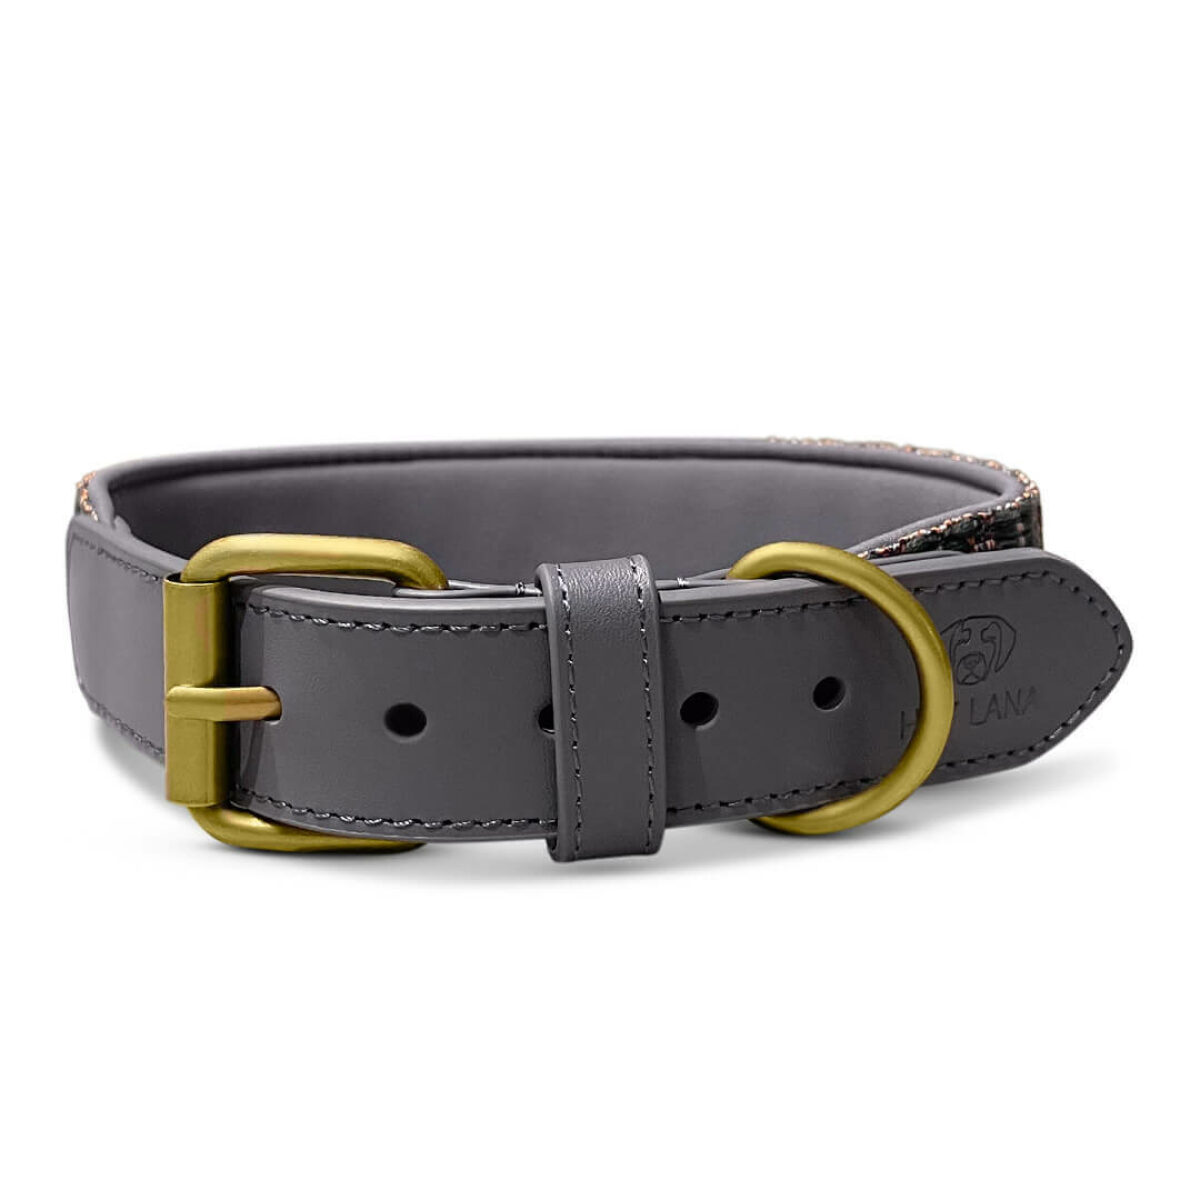 Tres Chic Kollektion Premium Hunde Halsband gepolstert in Blau/Grau vorne